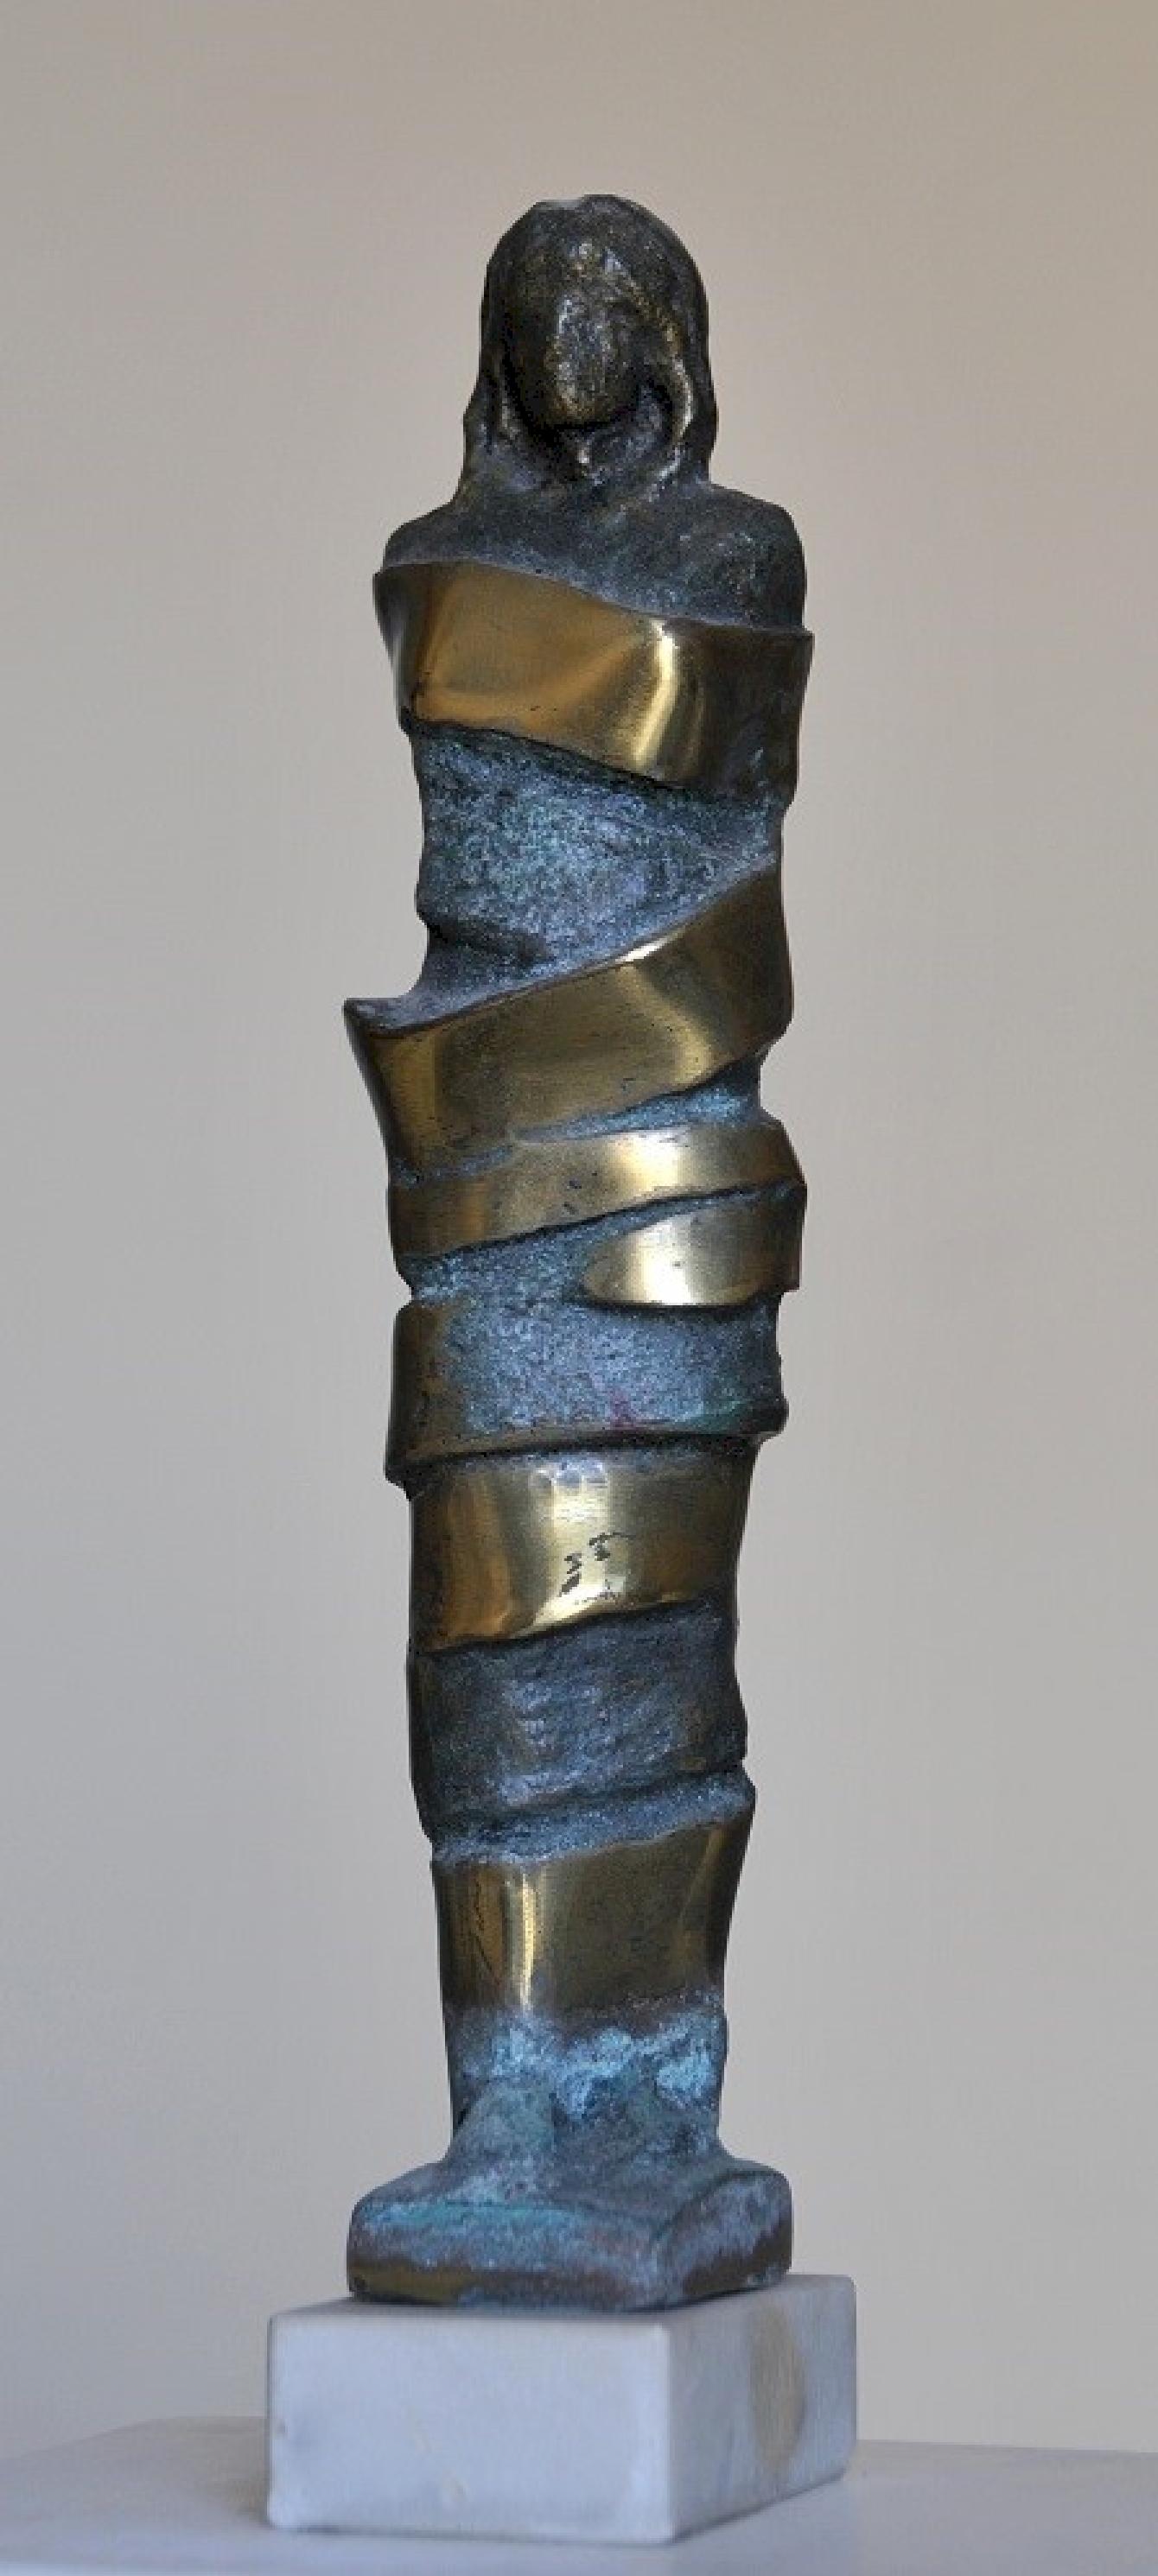 „Bound I“ Bronzeskulptur 13" x 2" x 3" in von Sarkis Tossonian			

Sarkis Tossoonian wurde 1953 in Alexandria geboren. Er schloss sein Studium an der Fakultät für Bildende Künste/Bildhauerei 1979 ab. Seit 1980 und bis heute stellt er in Einzel- und